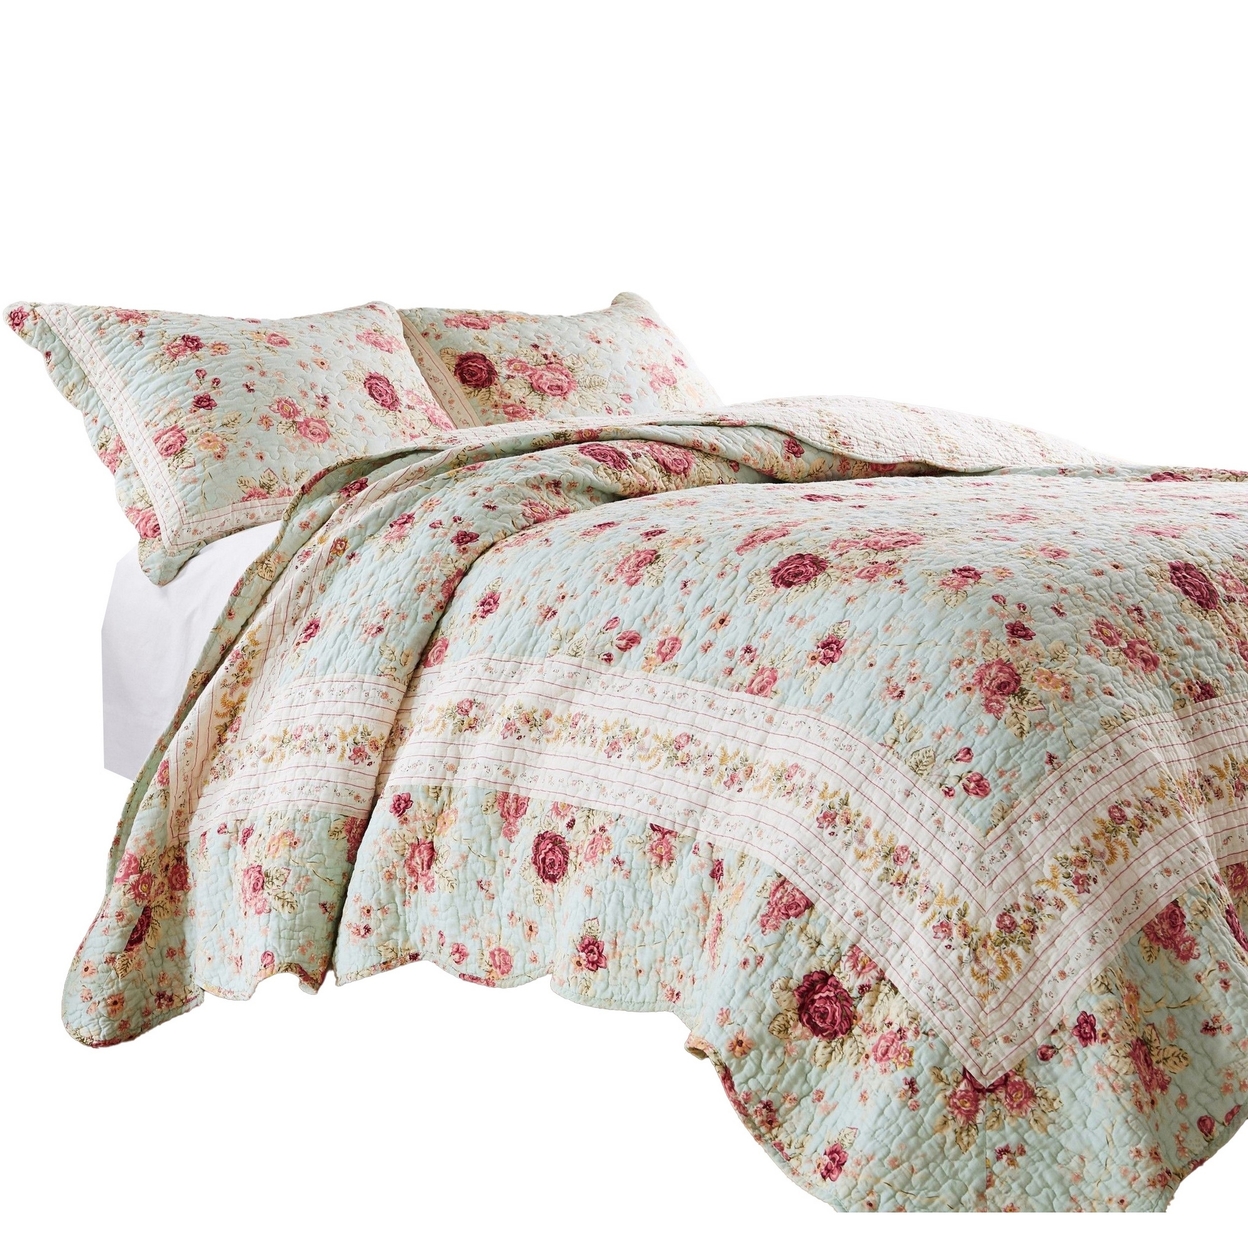 Rosle 2pc Twin Quilt And Pillow Sham Set, Scallop Edges, Floral Blue Cotton-Saltoro Sherpi